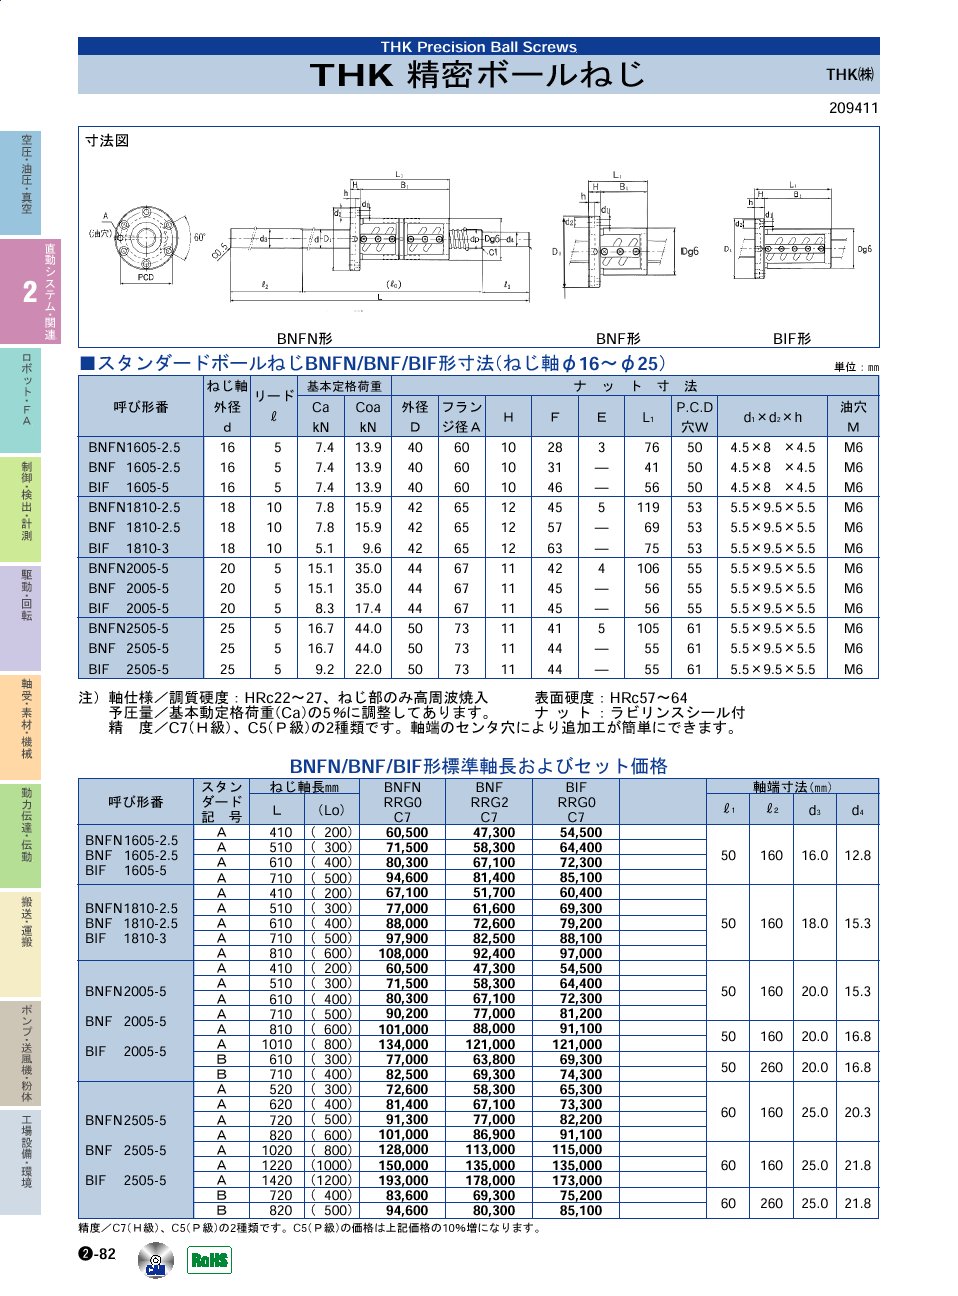 THK(株)　精密ボールねじ　直動システム・関連機器　P02-082　価格